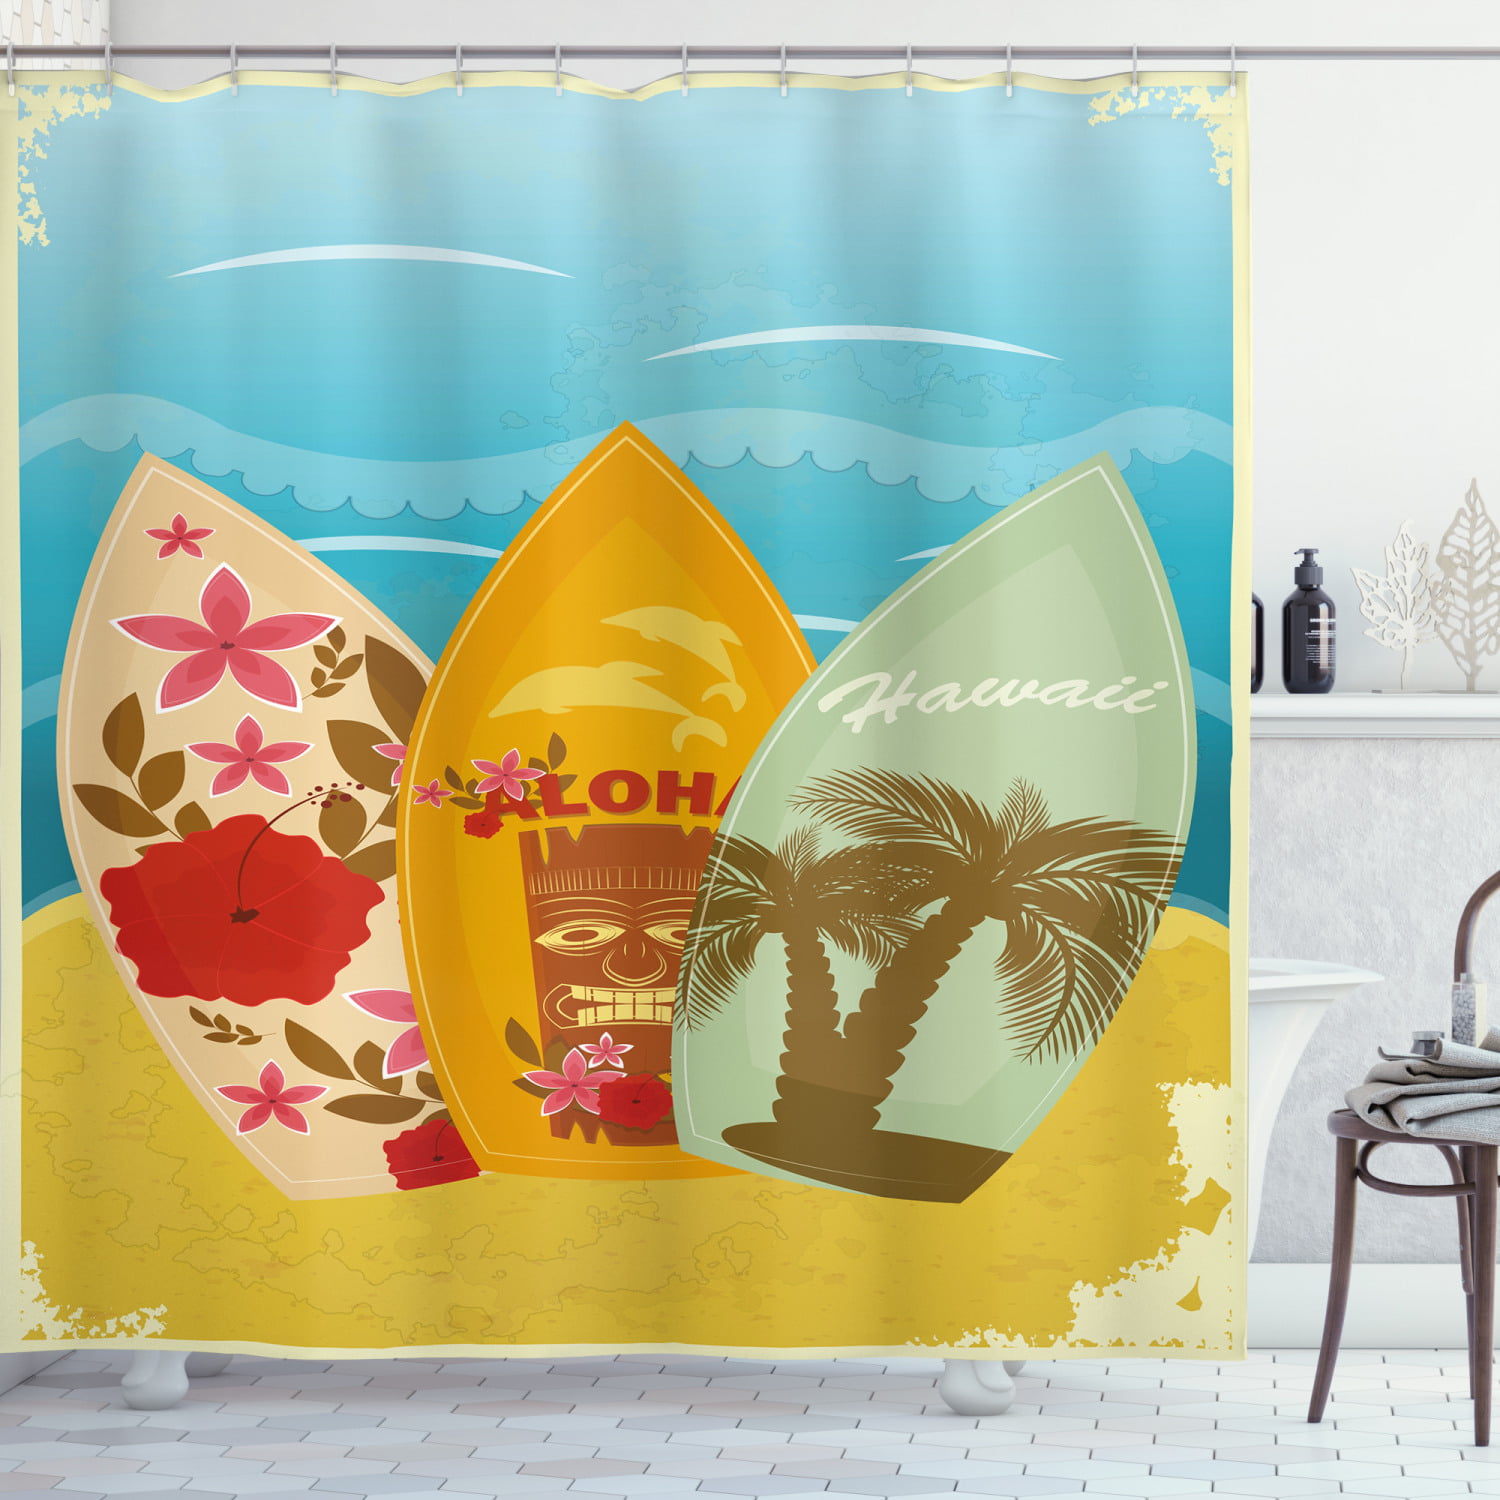 Waterproof Fabric Shower Curtain Set Enjoy Summer Holidays Sand Beach Surfboard 